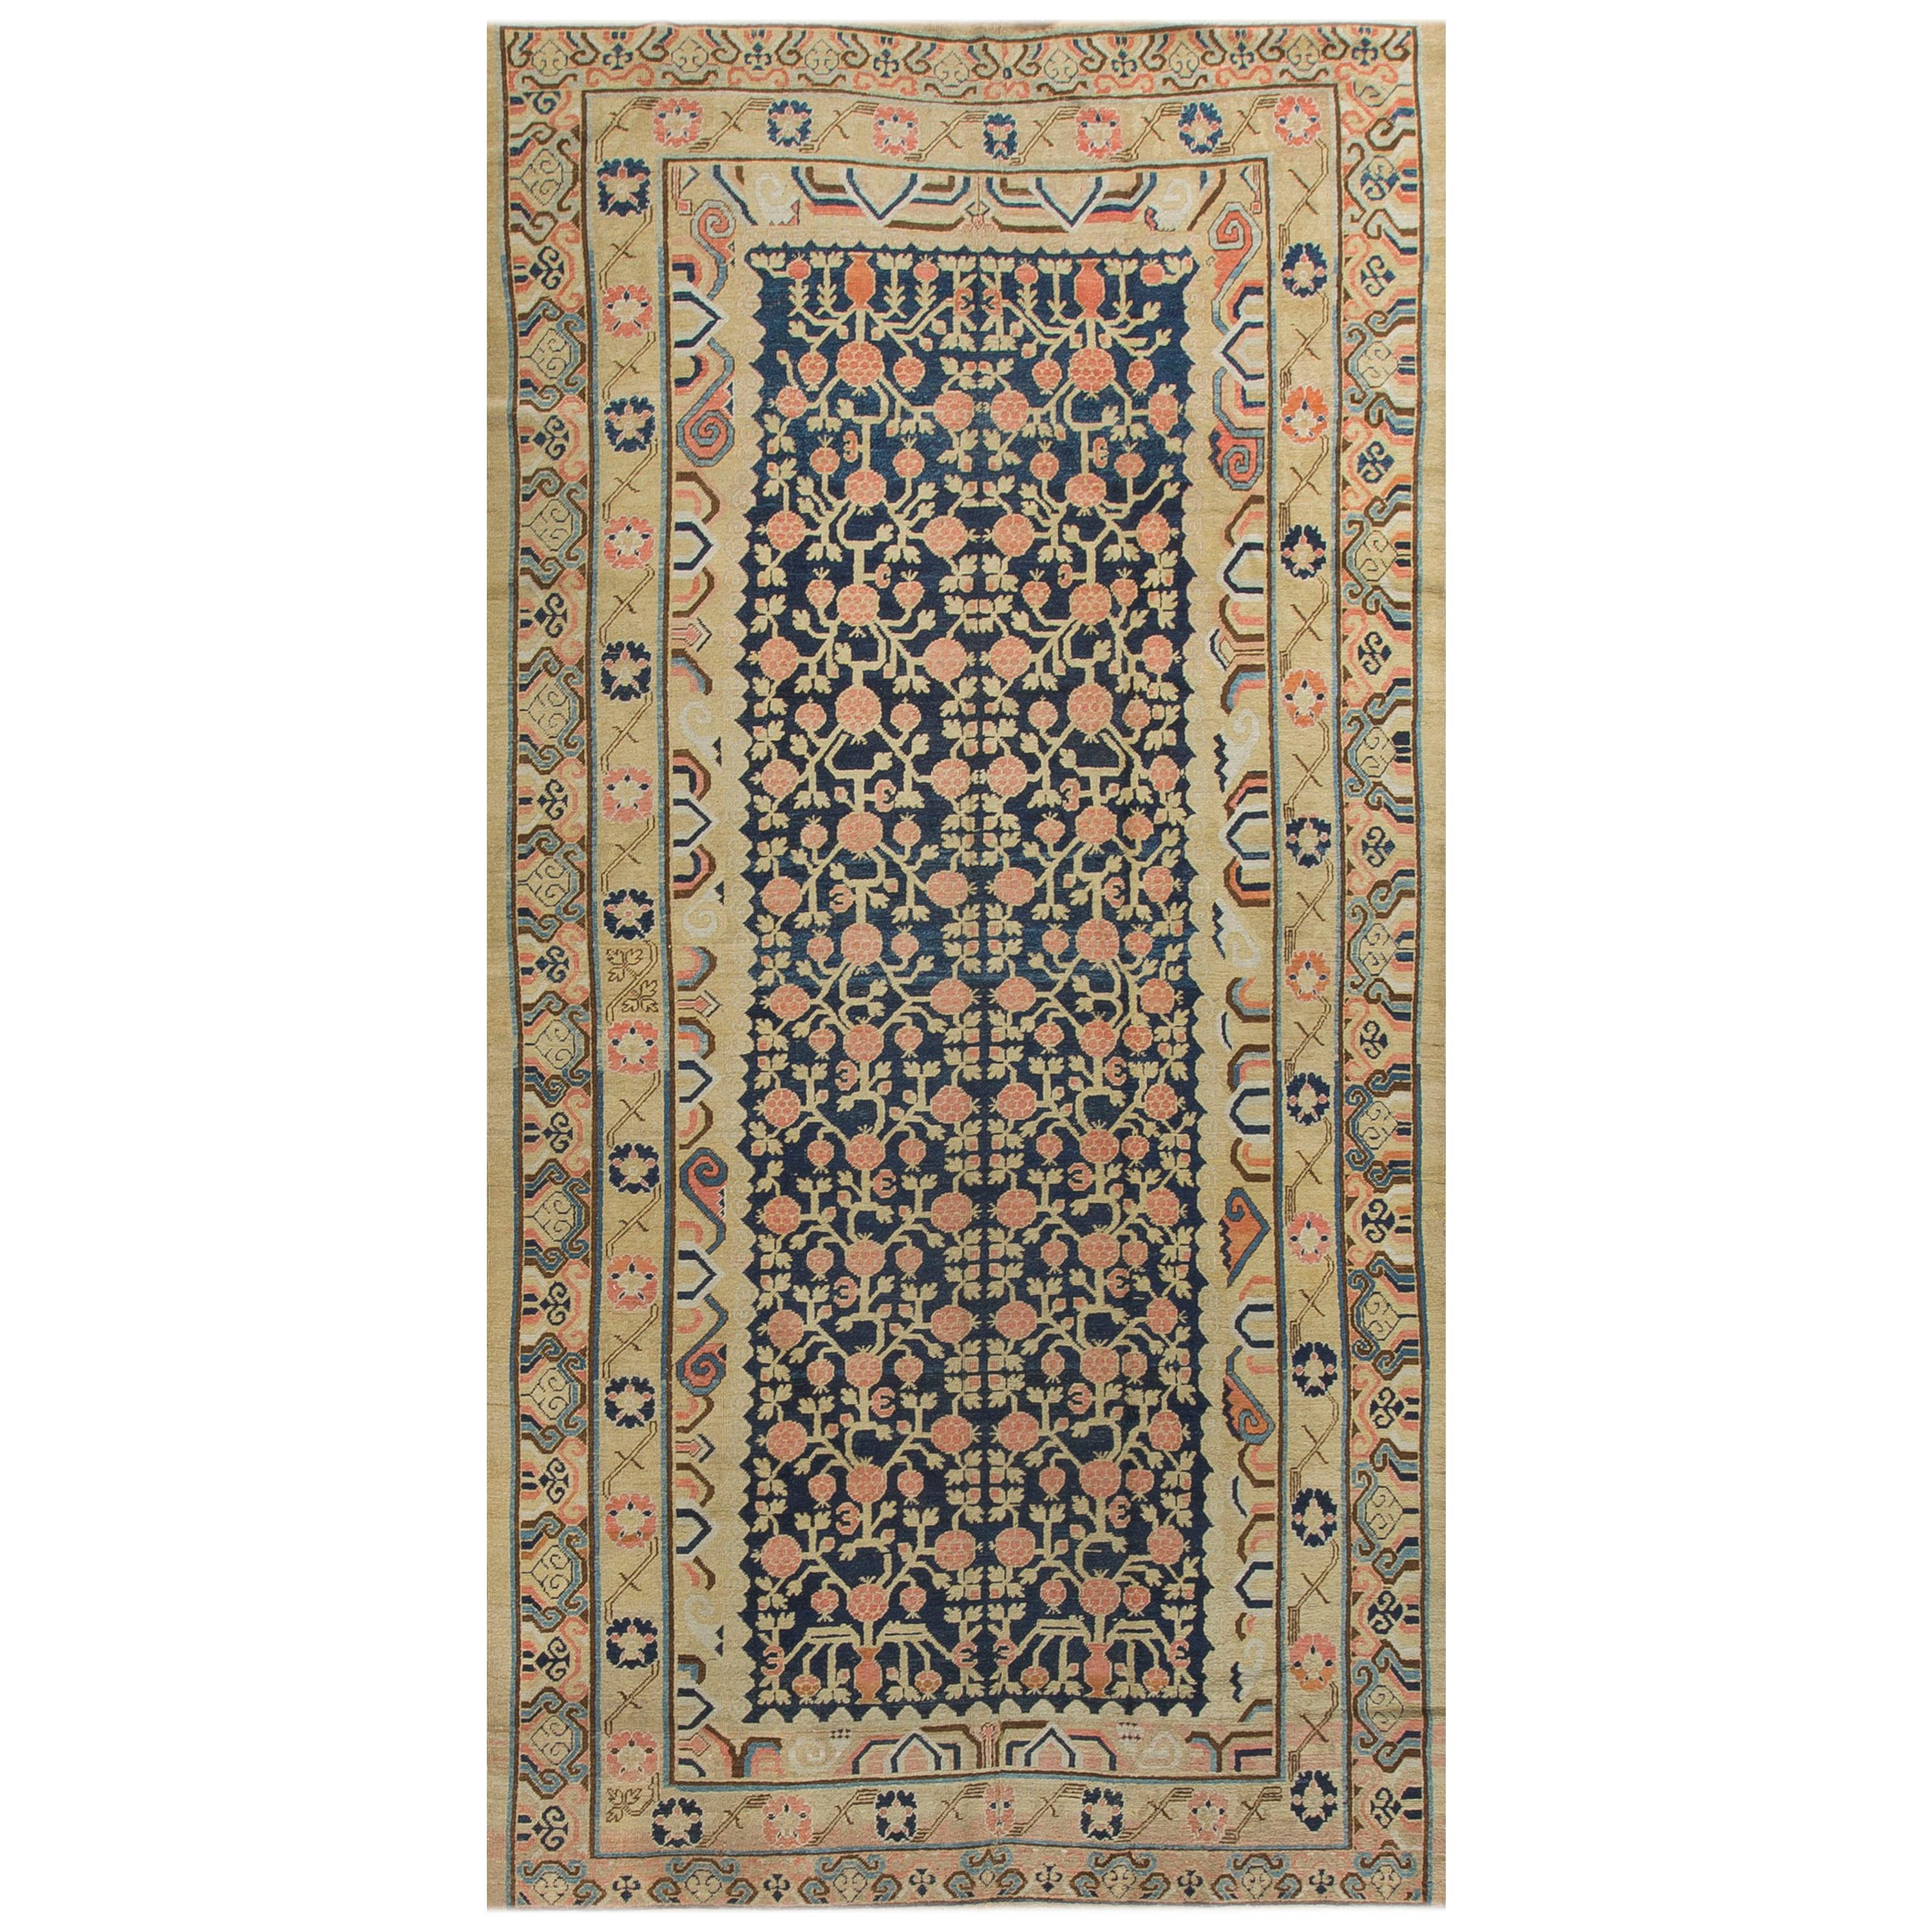 Antique Khotan Samarkand Rug For Sale